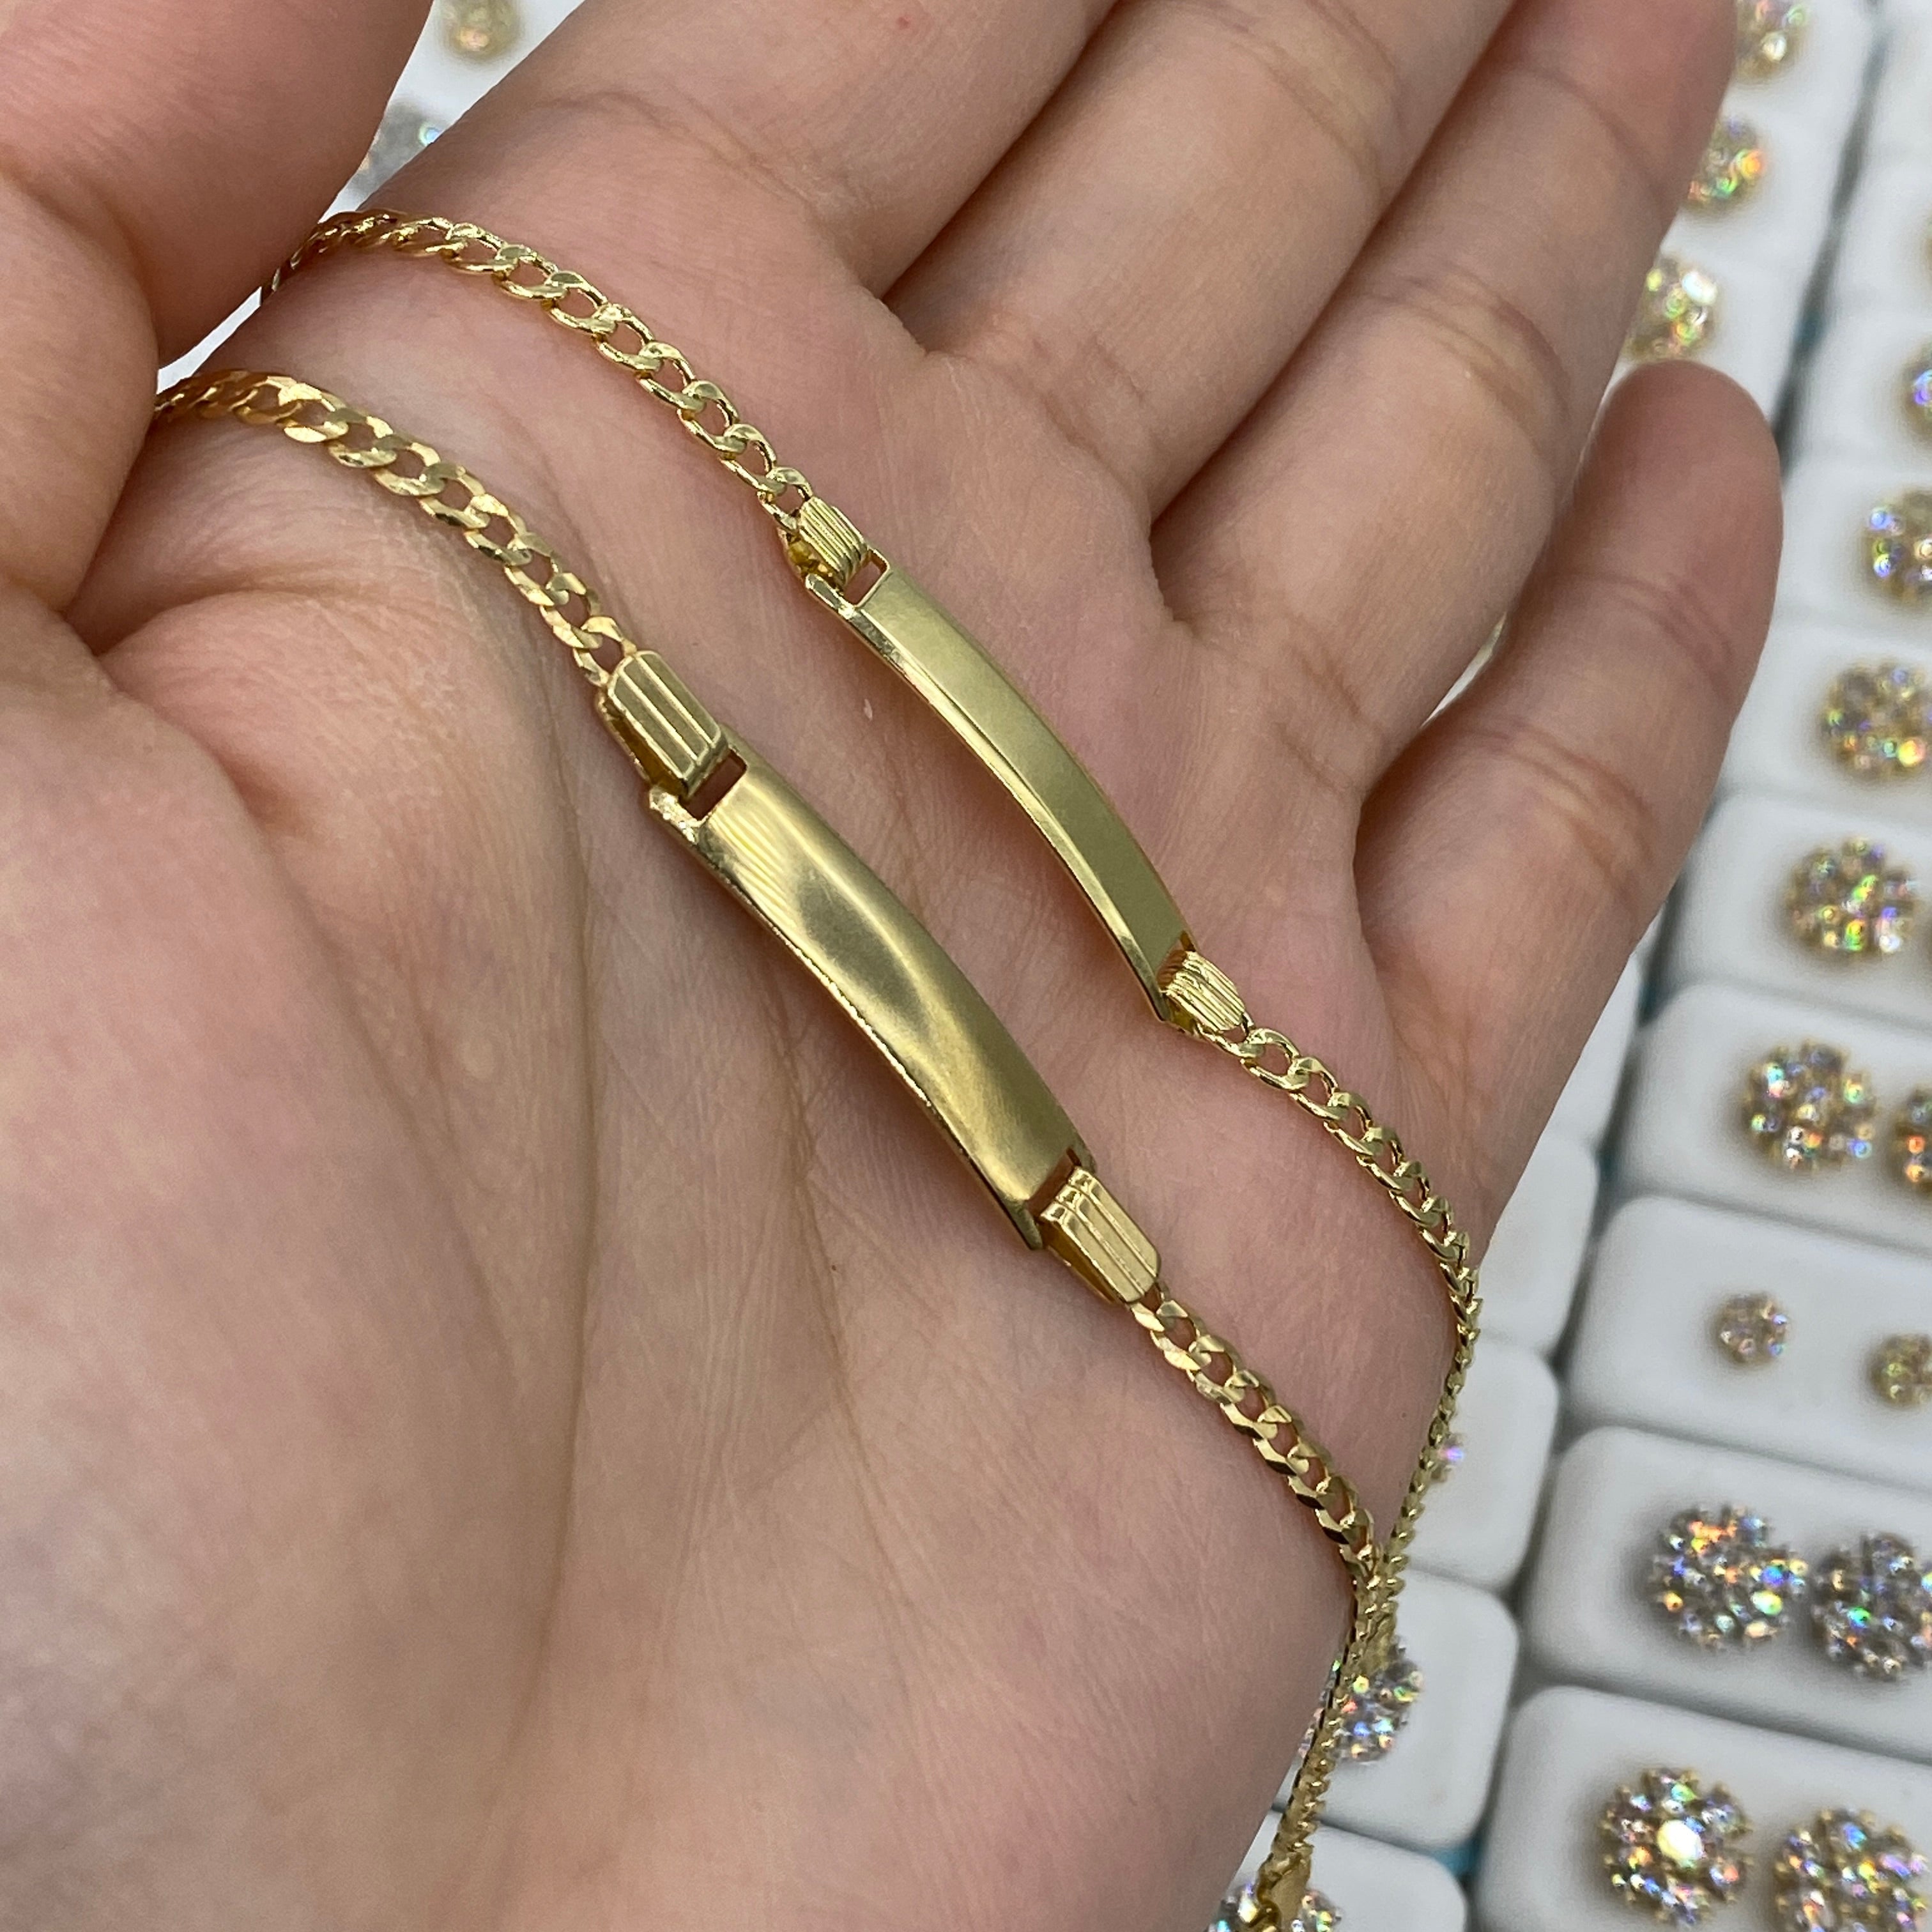 24k solid gold hand-made bangle bracelet